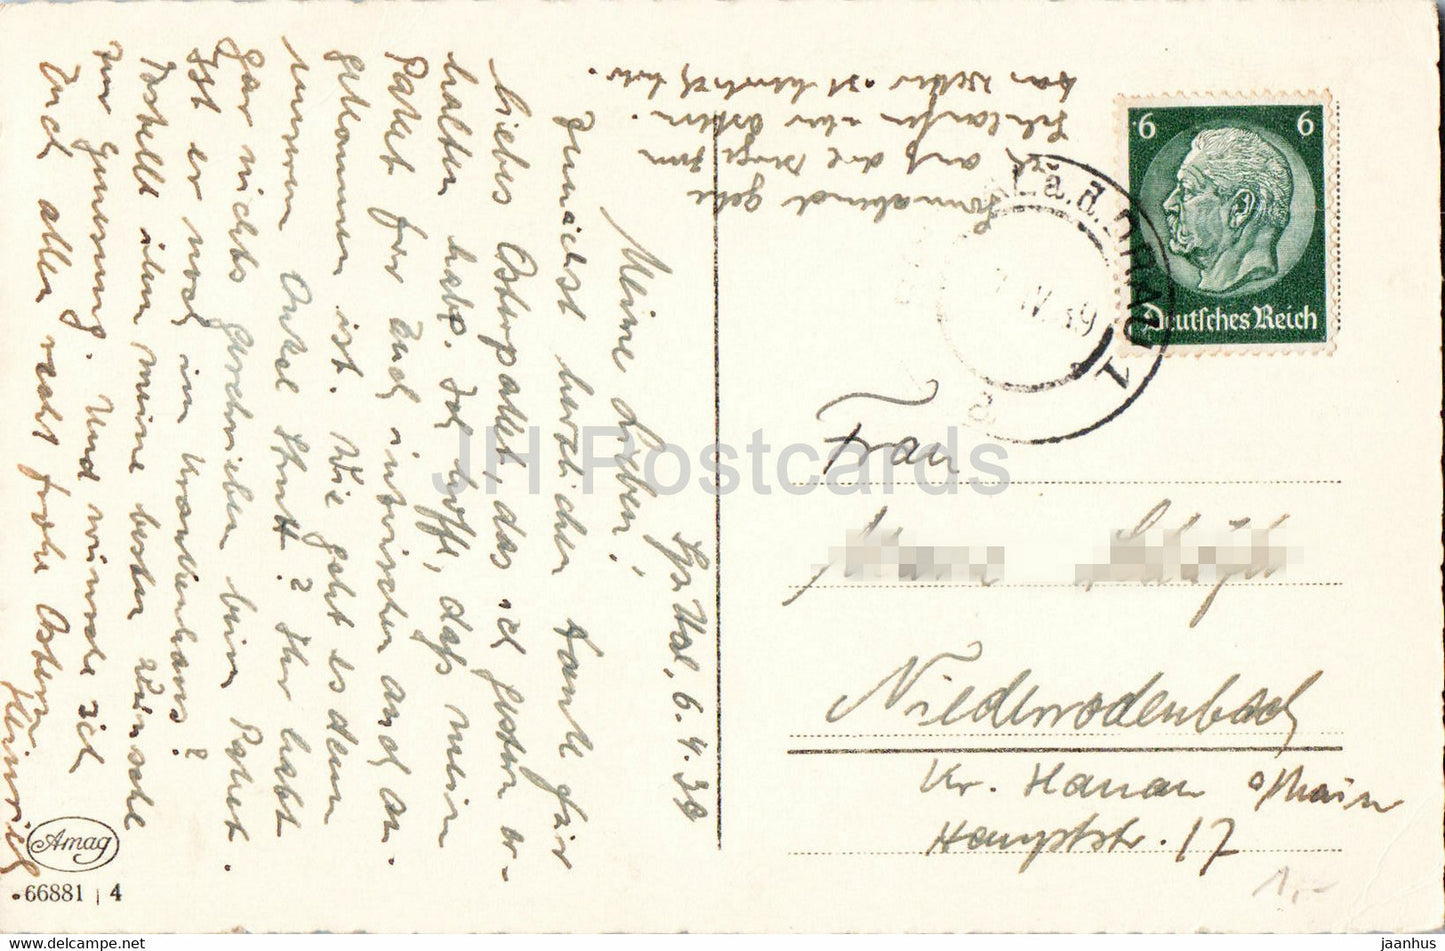 Carte de vœux de Pâques - Herzliche Ostergrusse - 66881 - carte postale ancienne - 1939 - Allemagne - utilisé